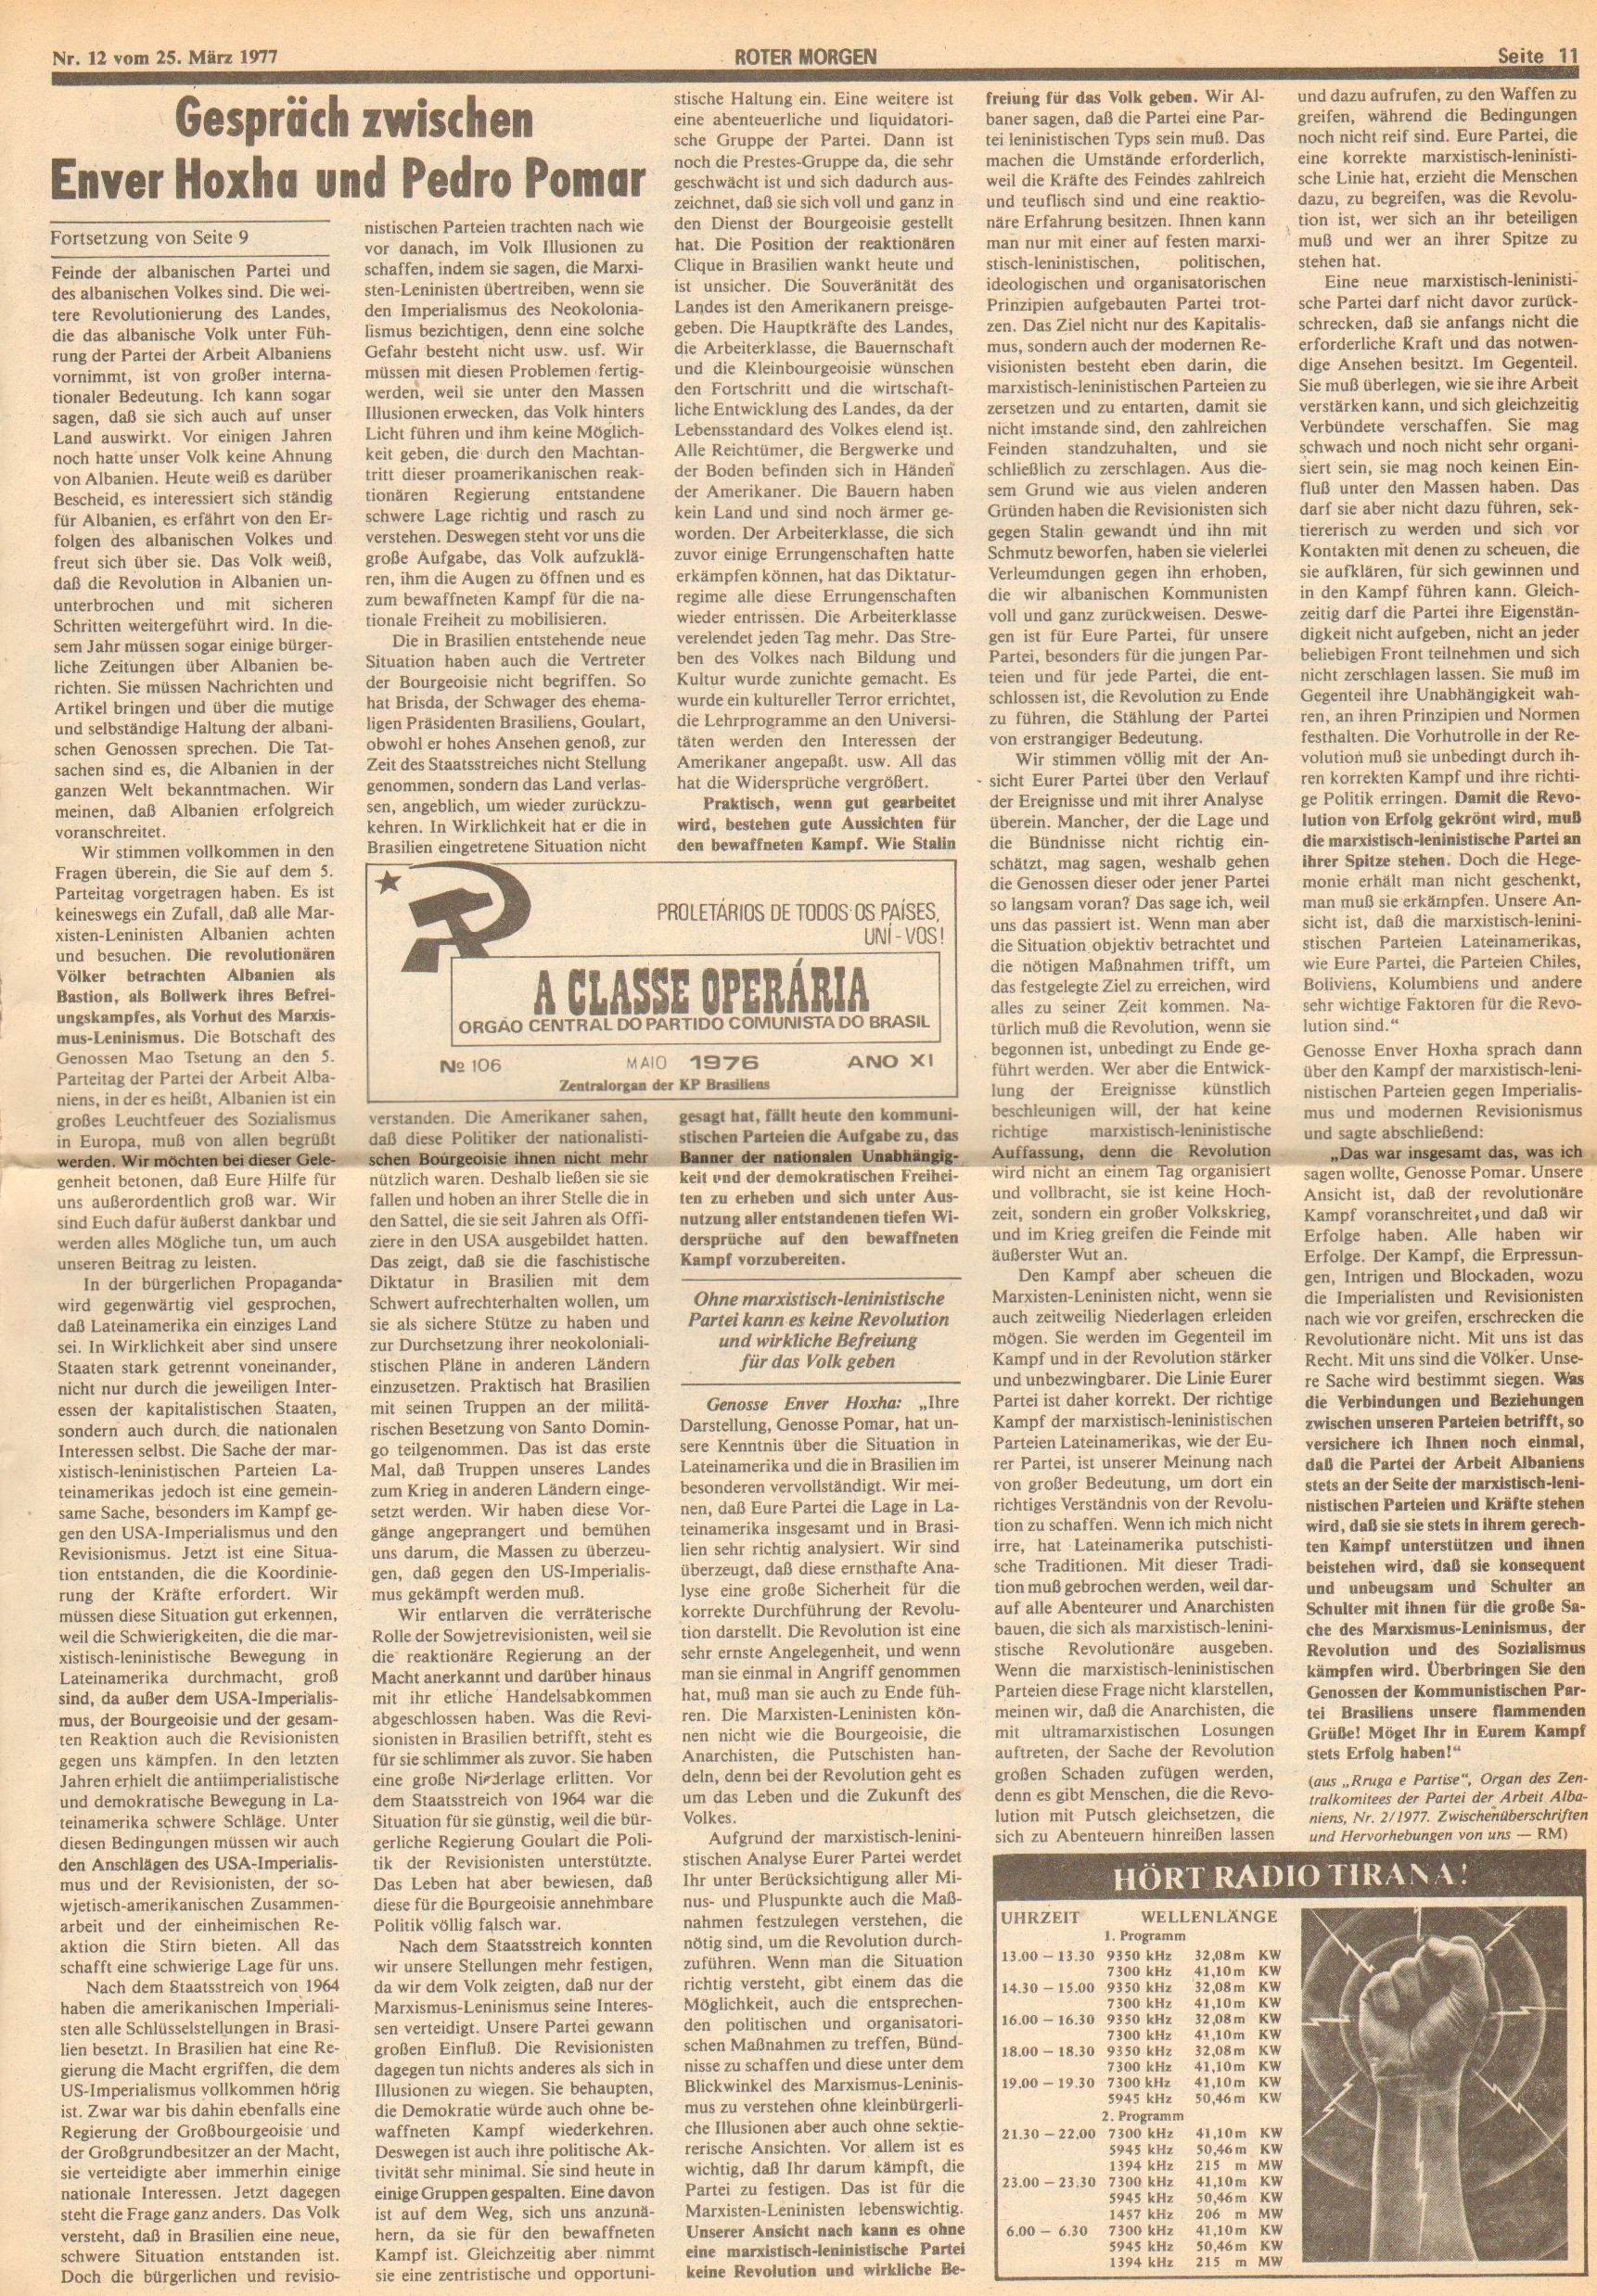 Roter Morgen, 11. Jg., 25. März 1977, Nr. 12, Seite 11